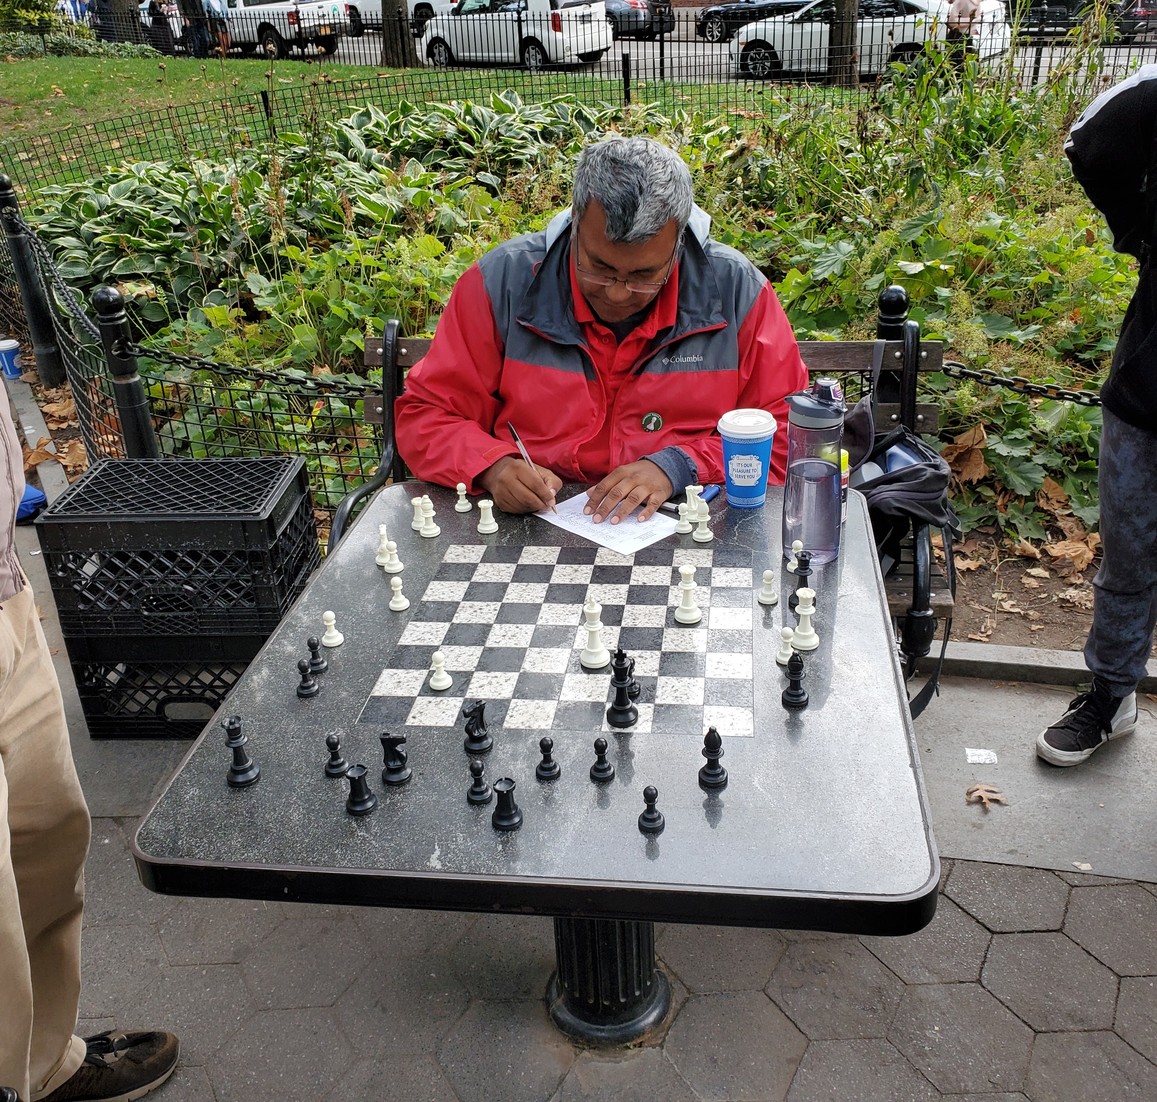 Stulzer Chess: agosto 2012